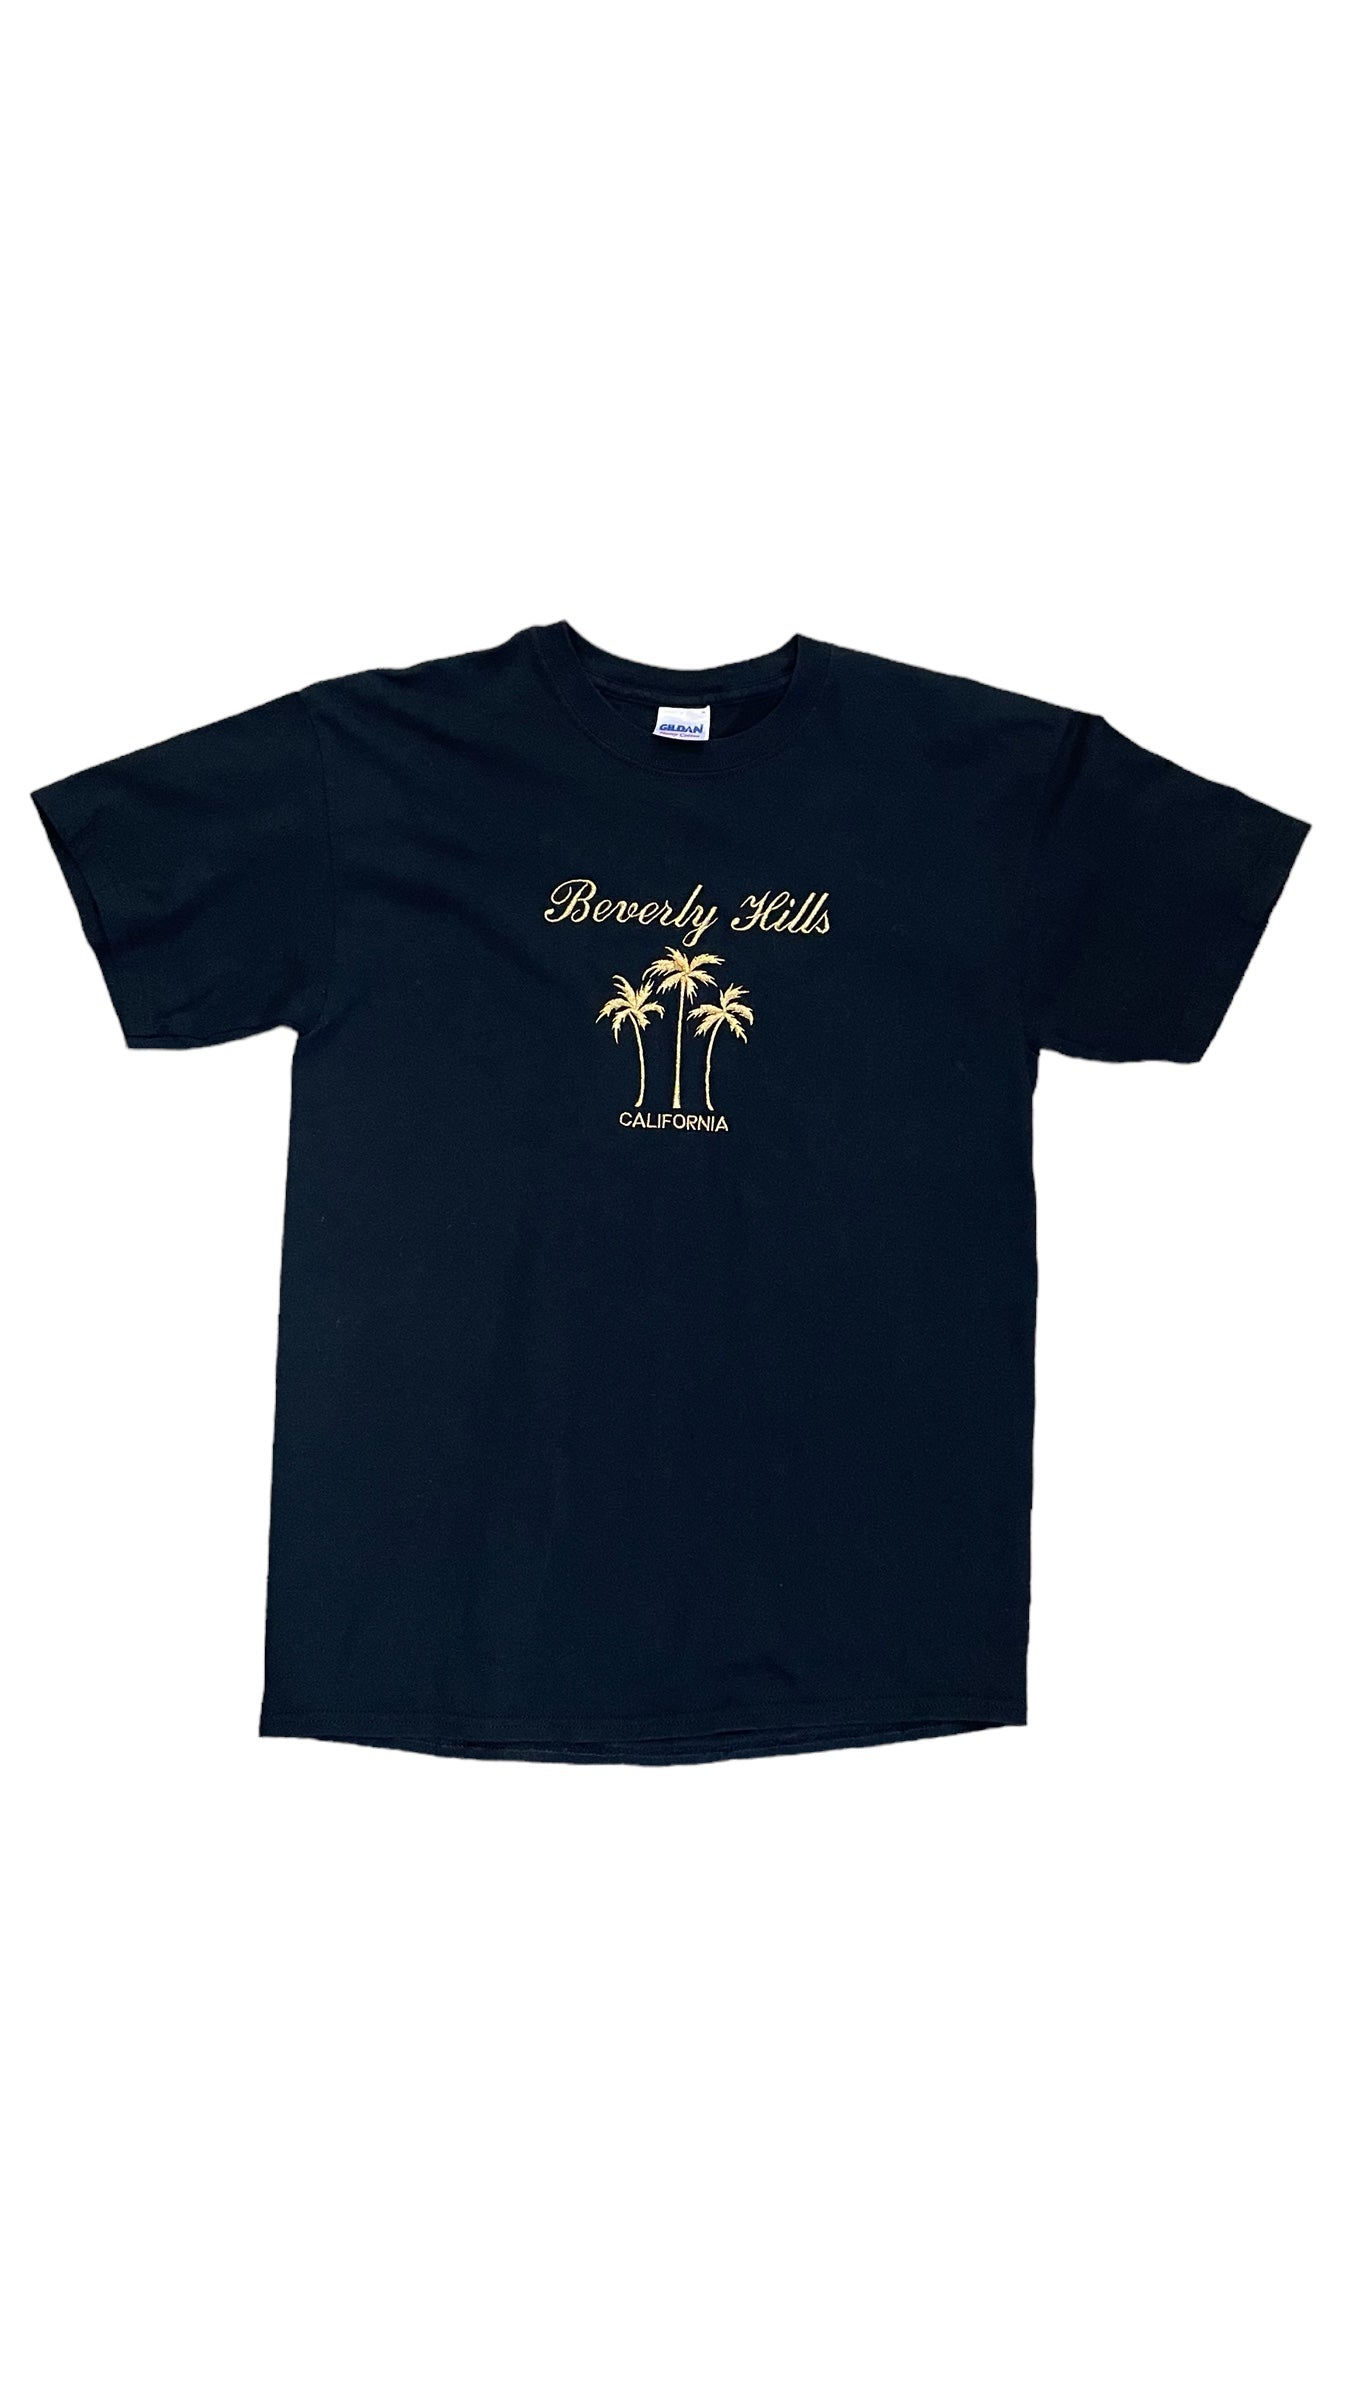 Vintage 90s black metallic Beverly Hills souvenier t shirt - Size M